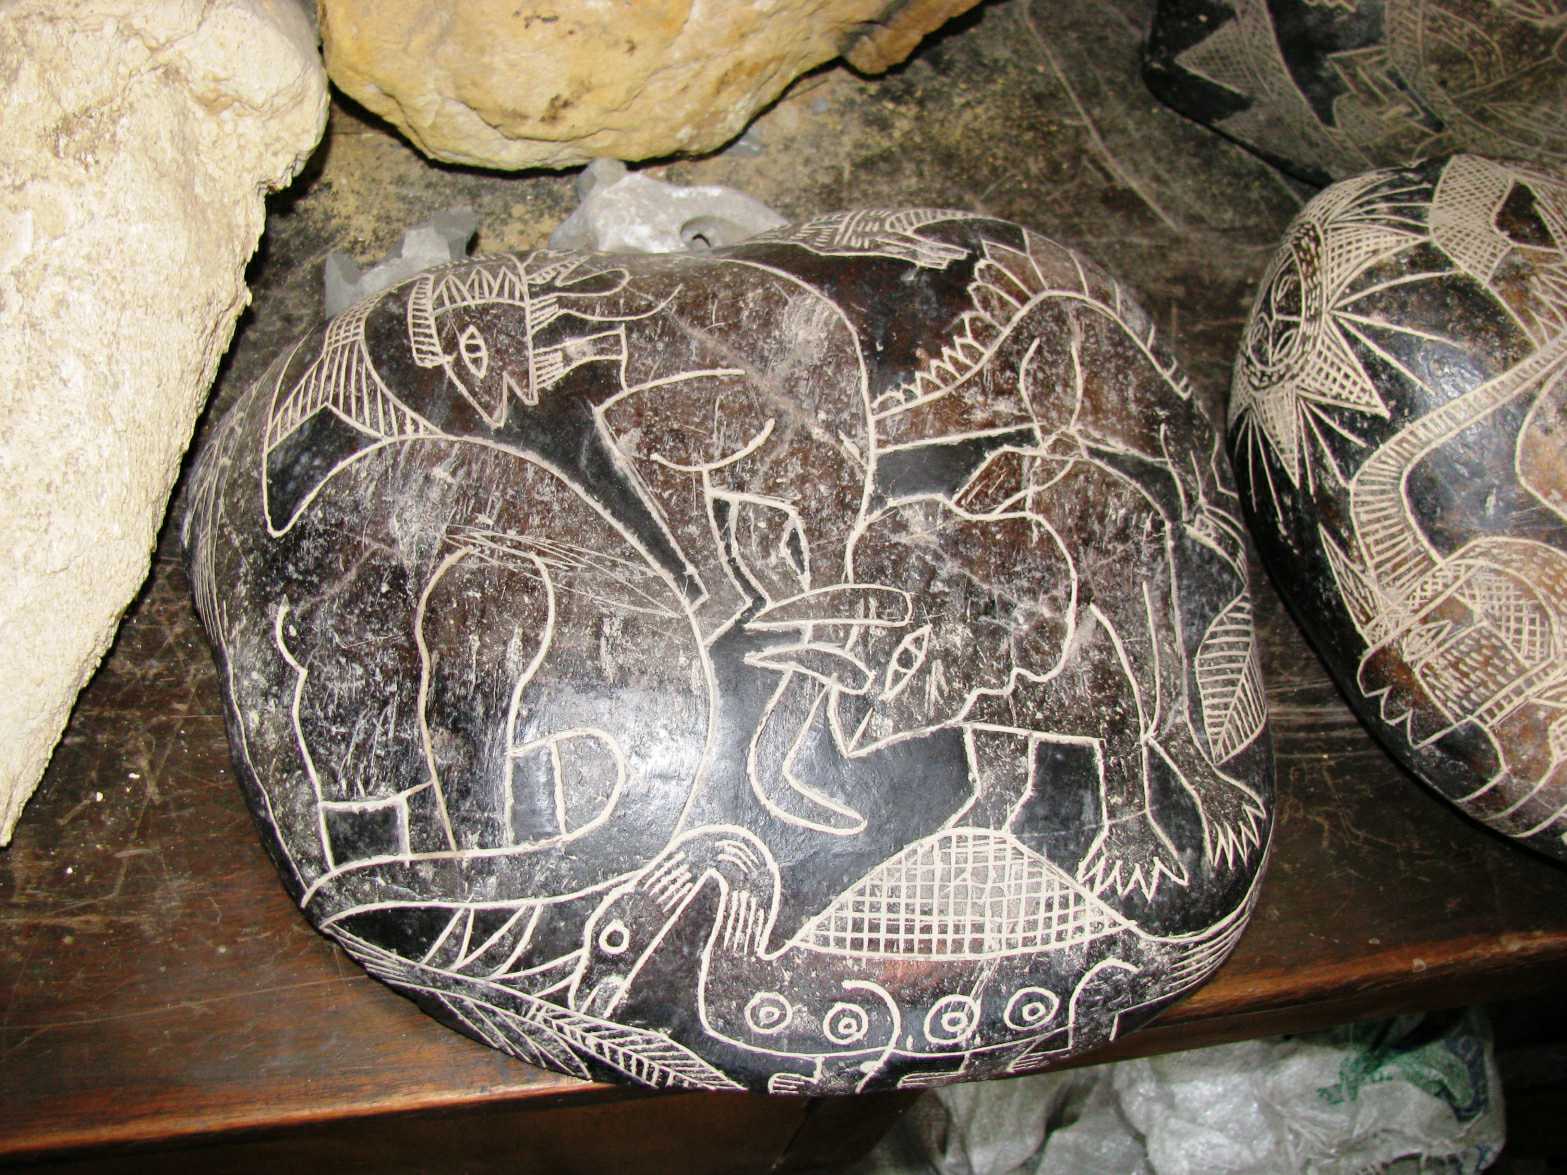 Du har förmodligen aldrig hört talas om en 2,400 3 år gammal gigantisk lervas som grävts fram i Peru XNUMX